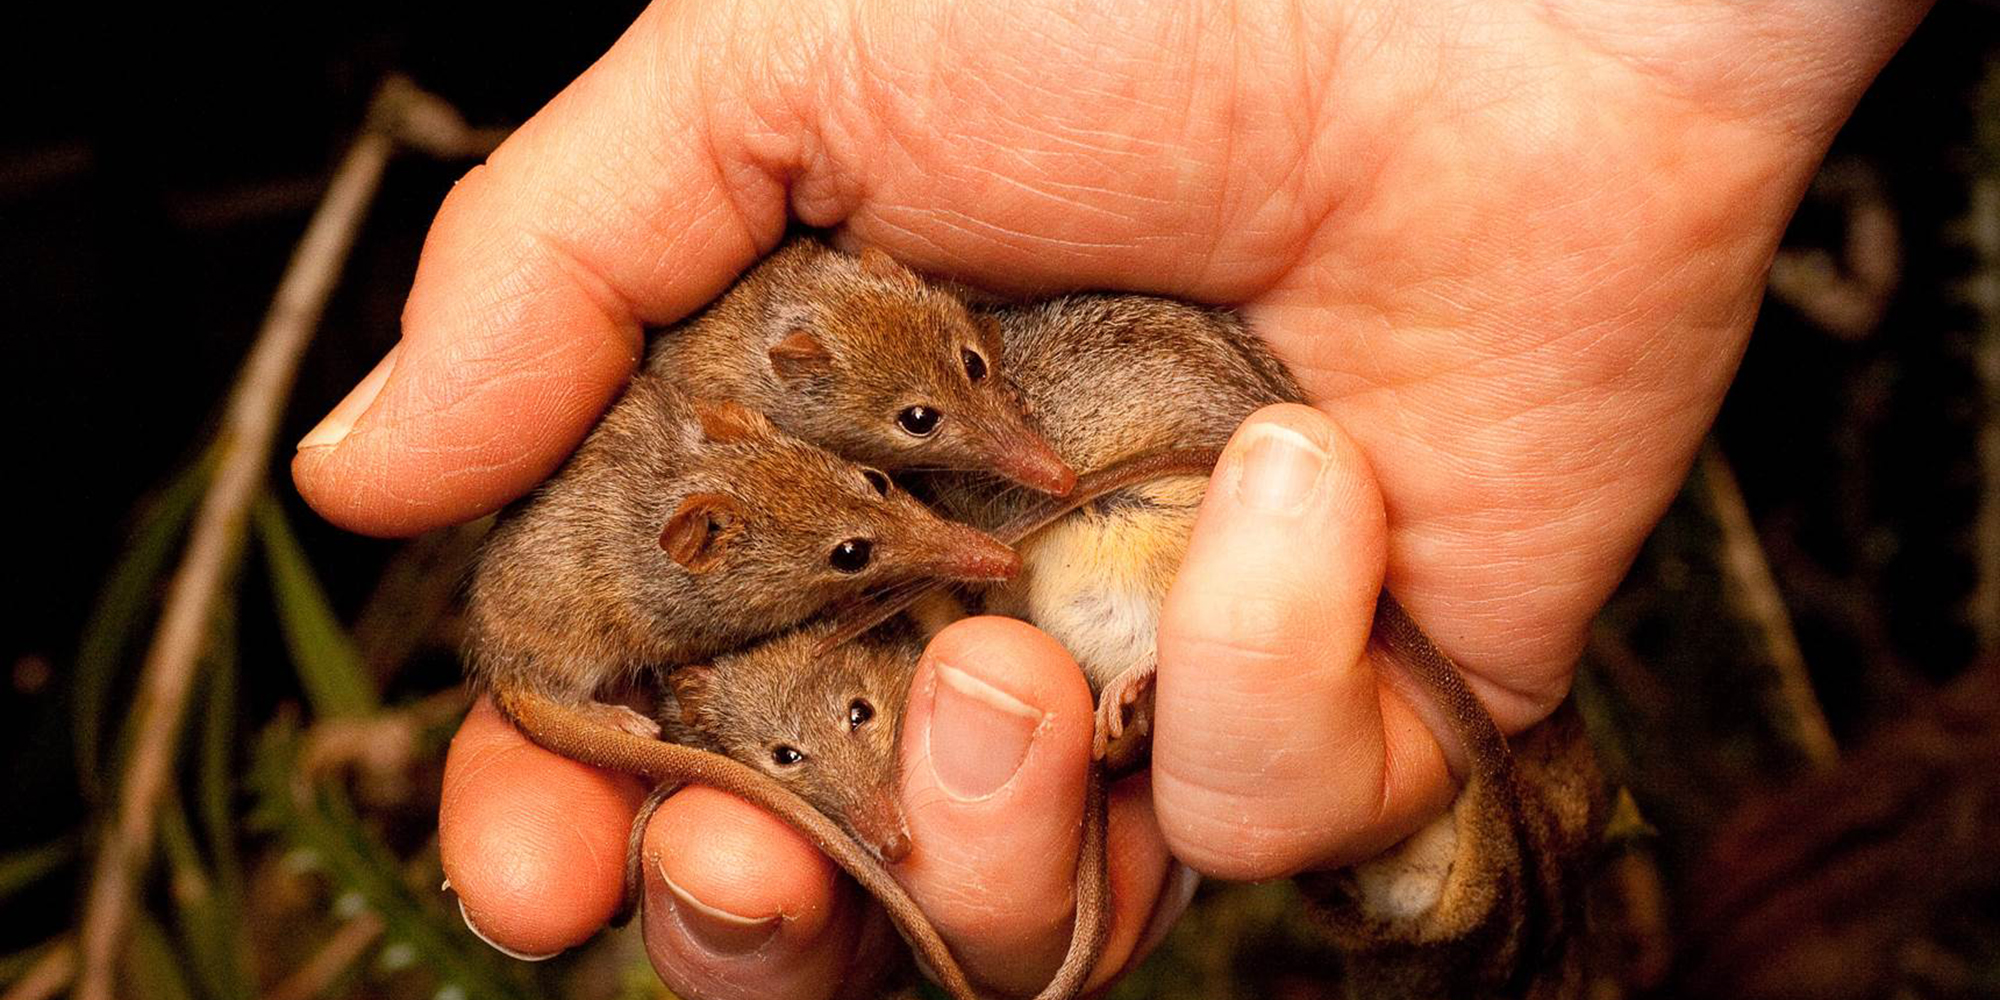 Three tiny native mammals held in a hand